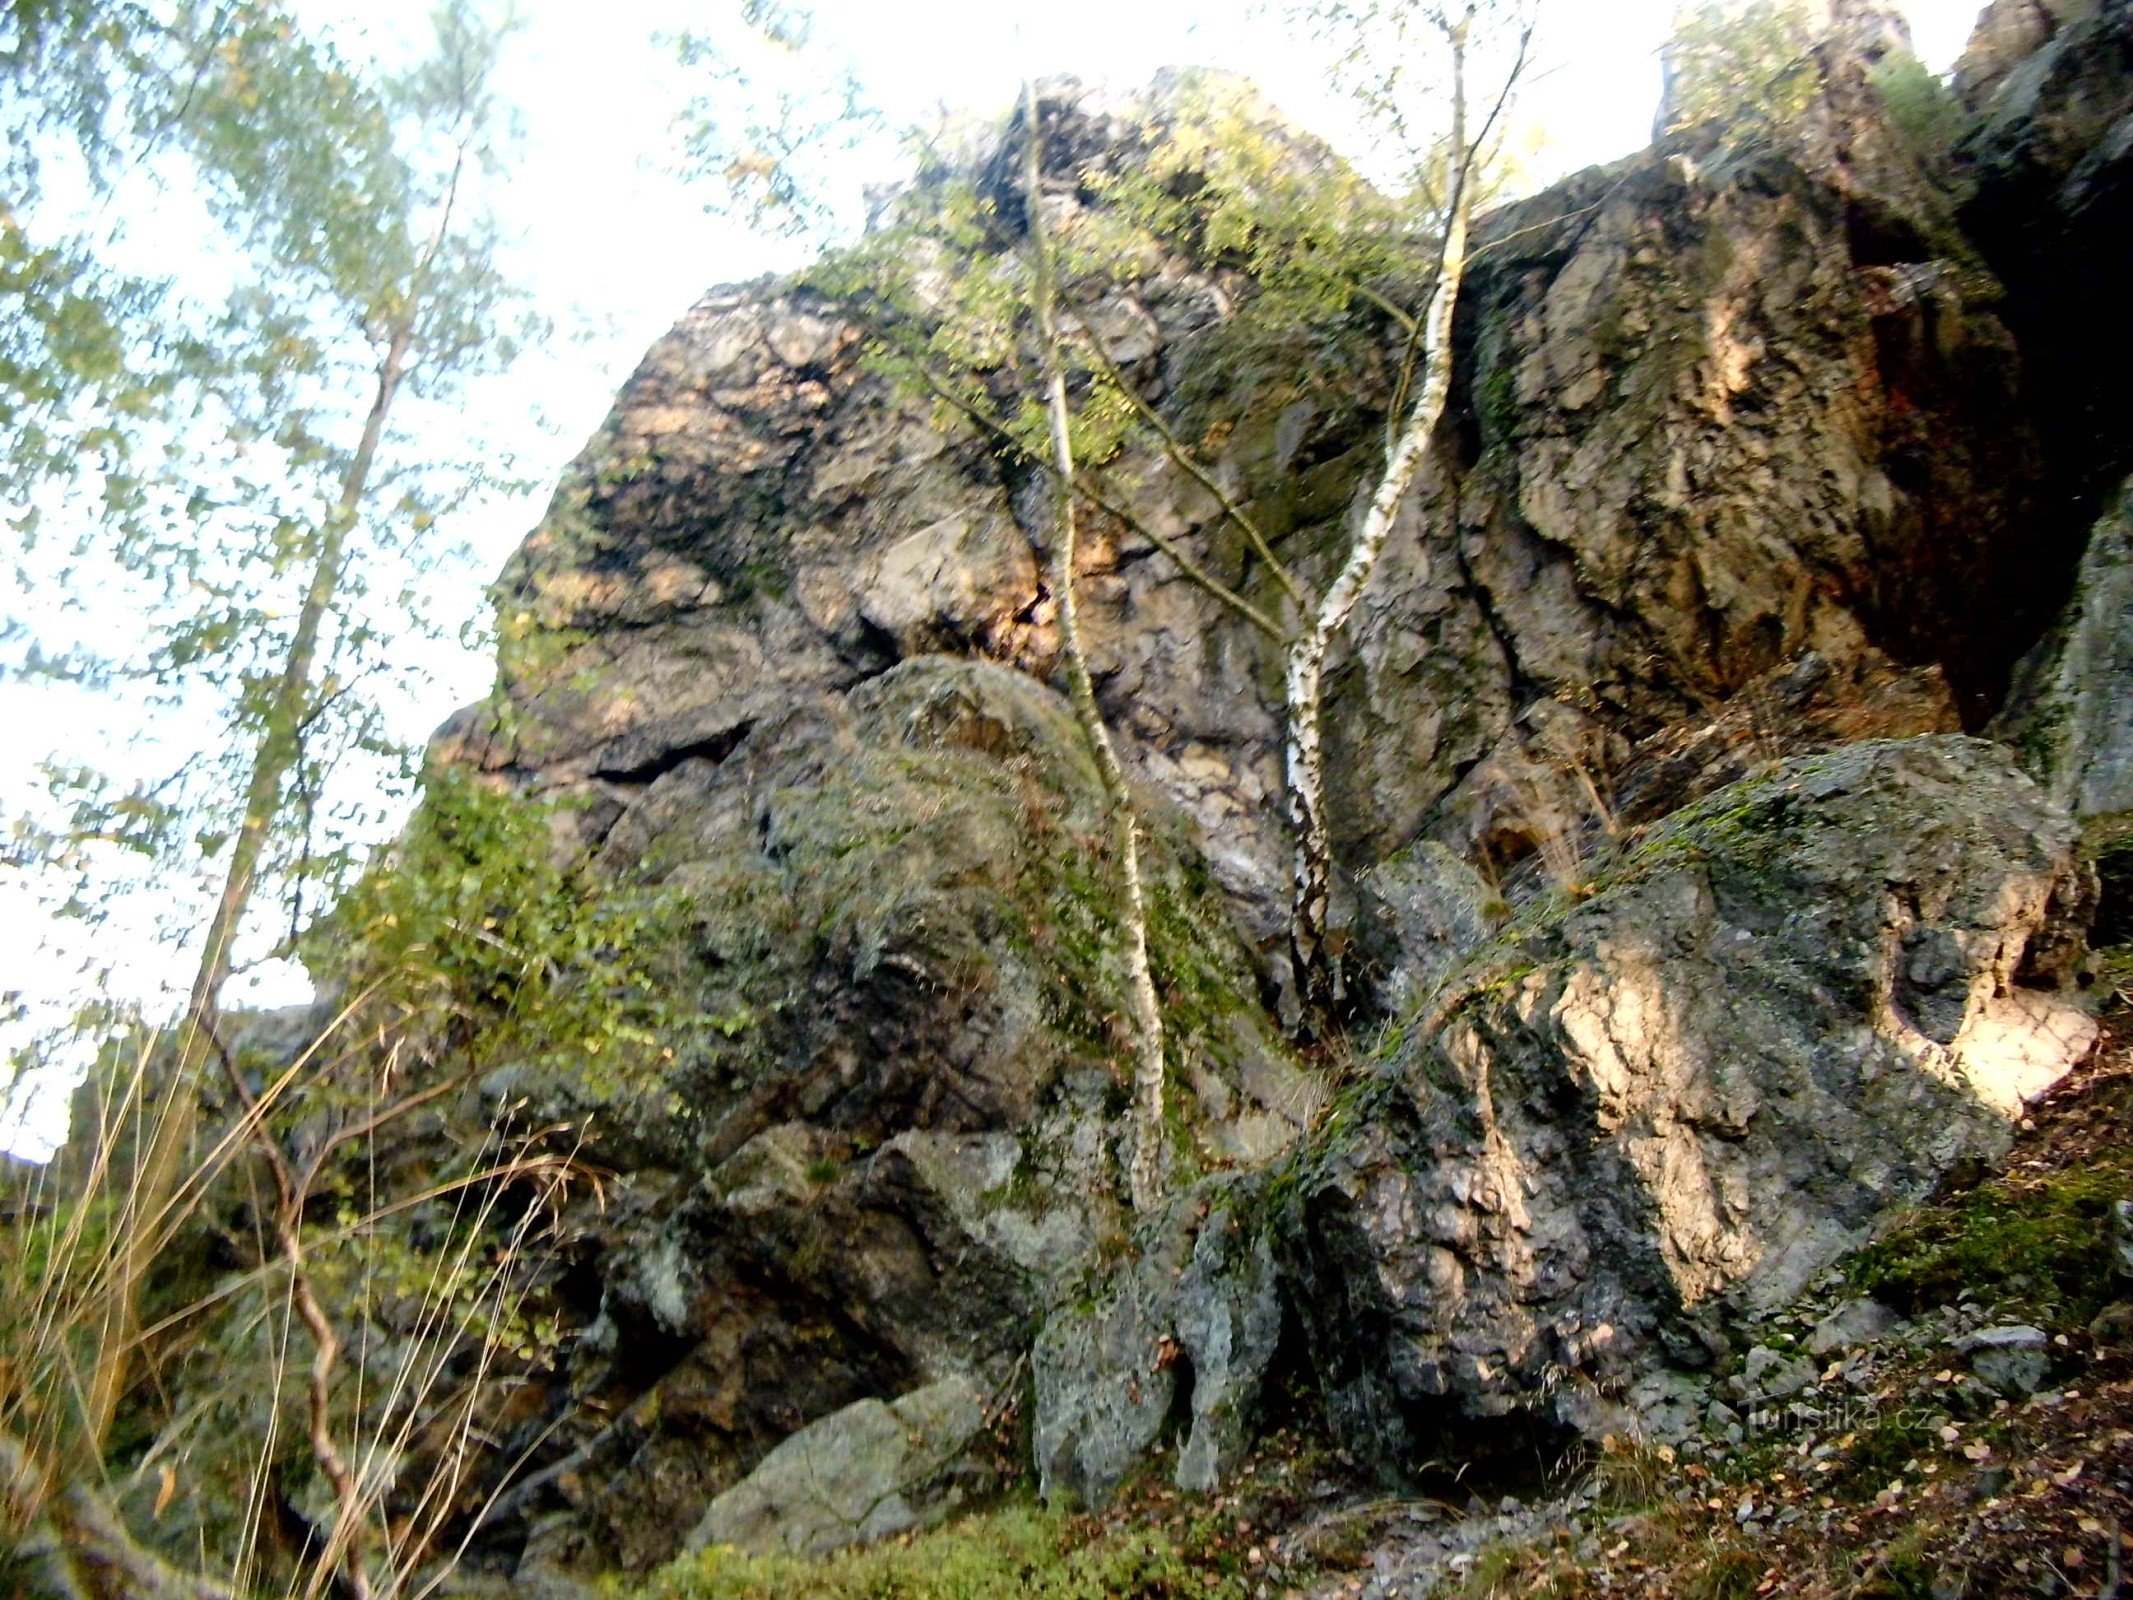 Zdice から Hudlice まで、またはヨーゼフ ユングマン、セント トーマス、興味深い岩までの散歩